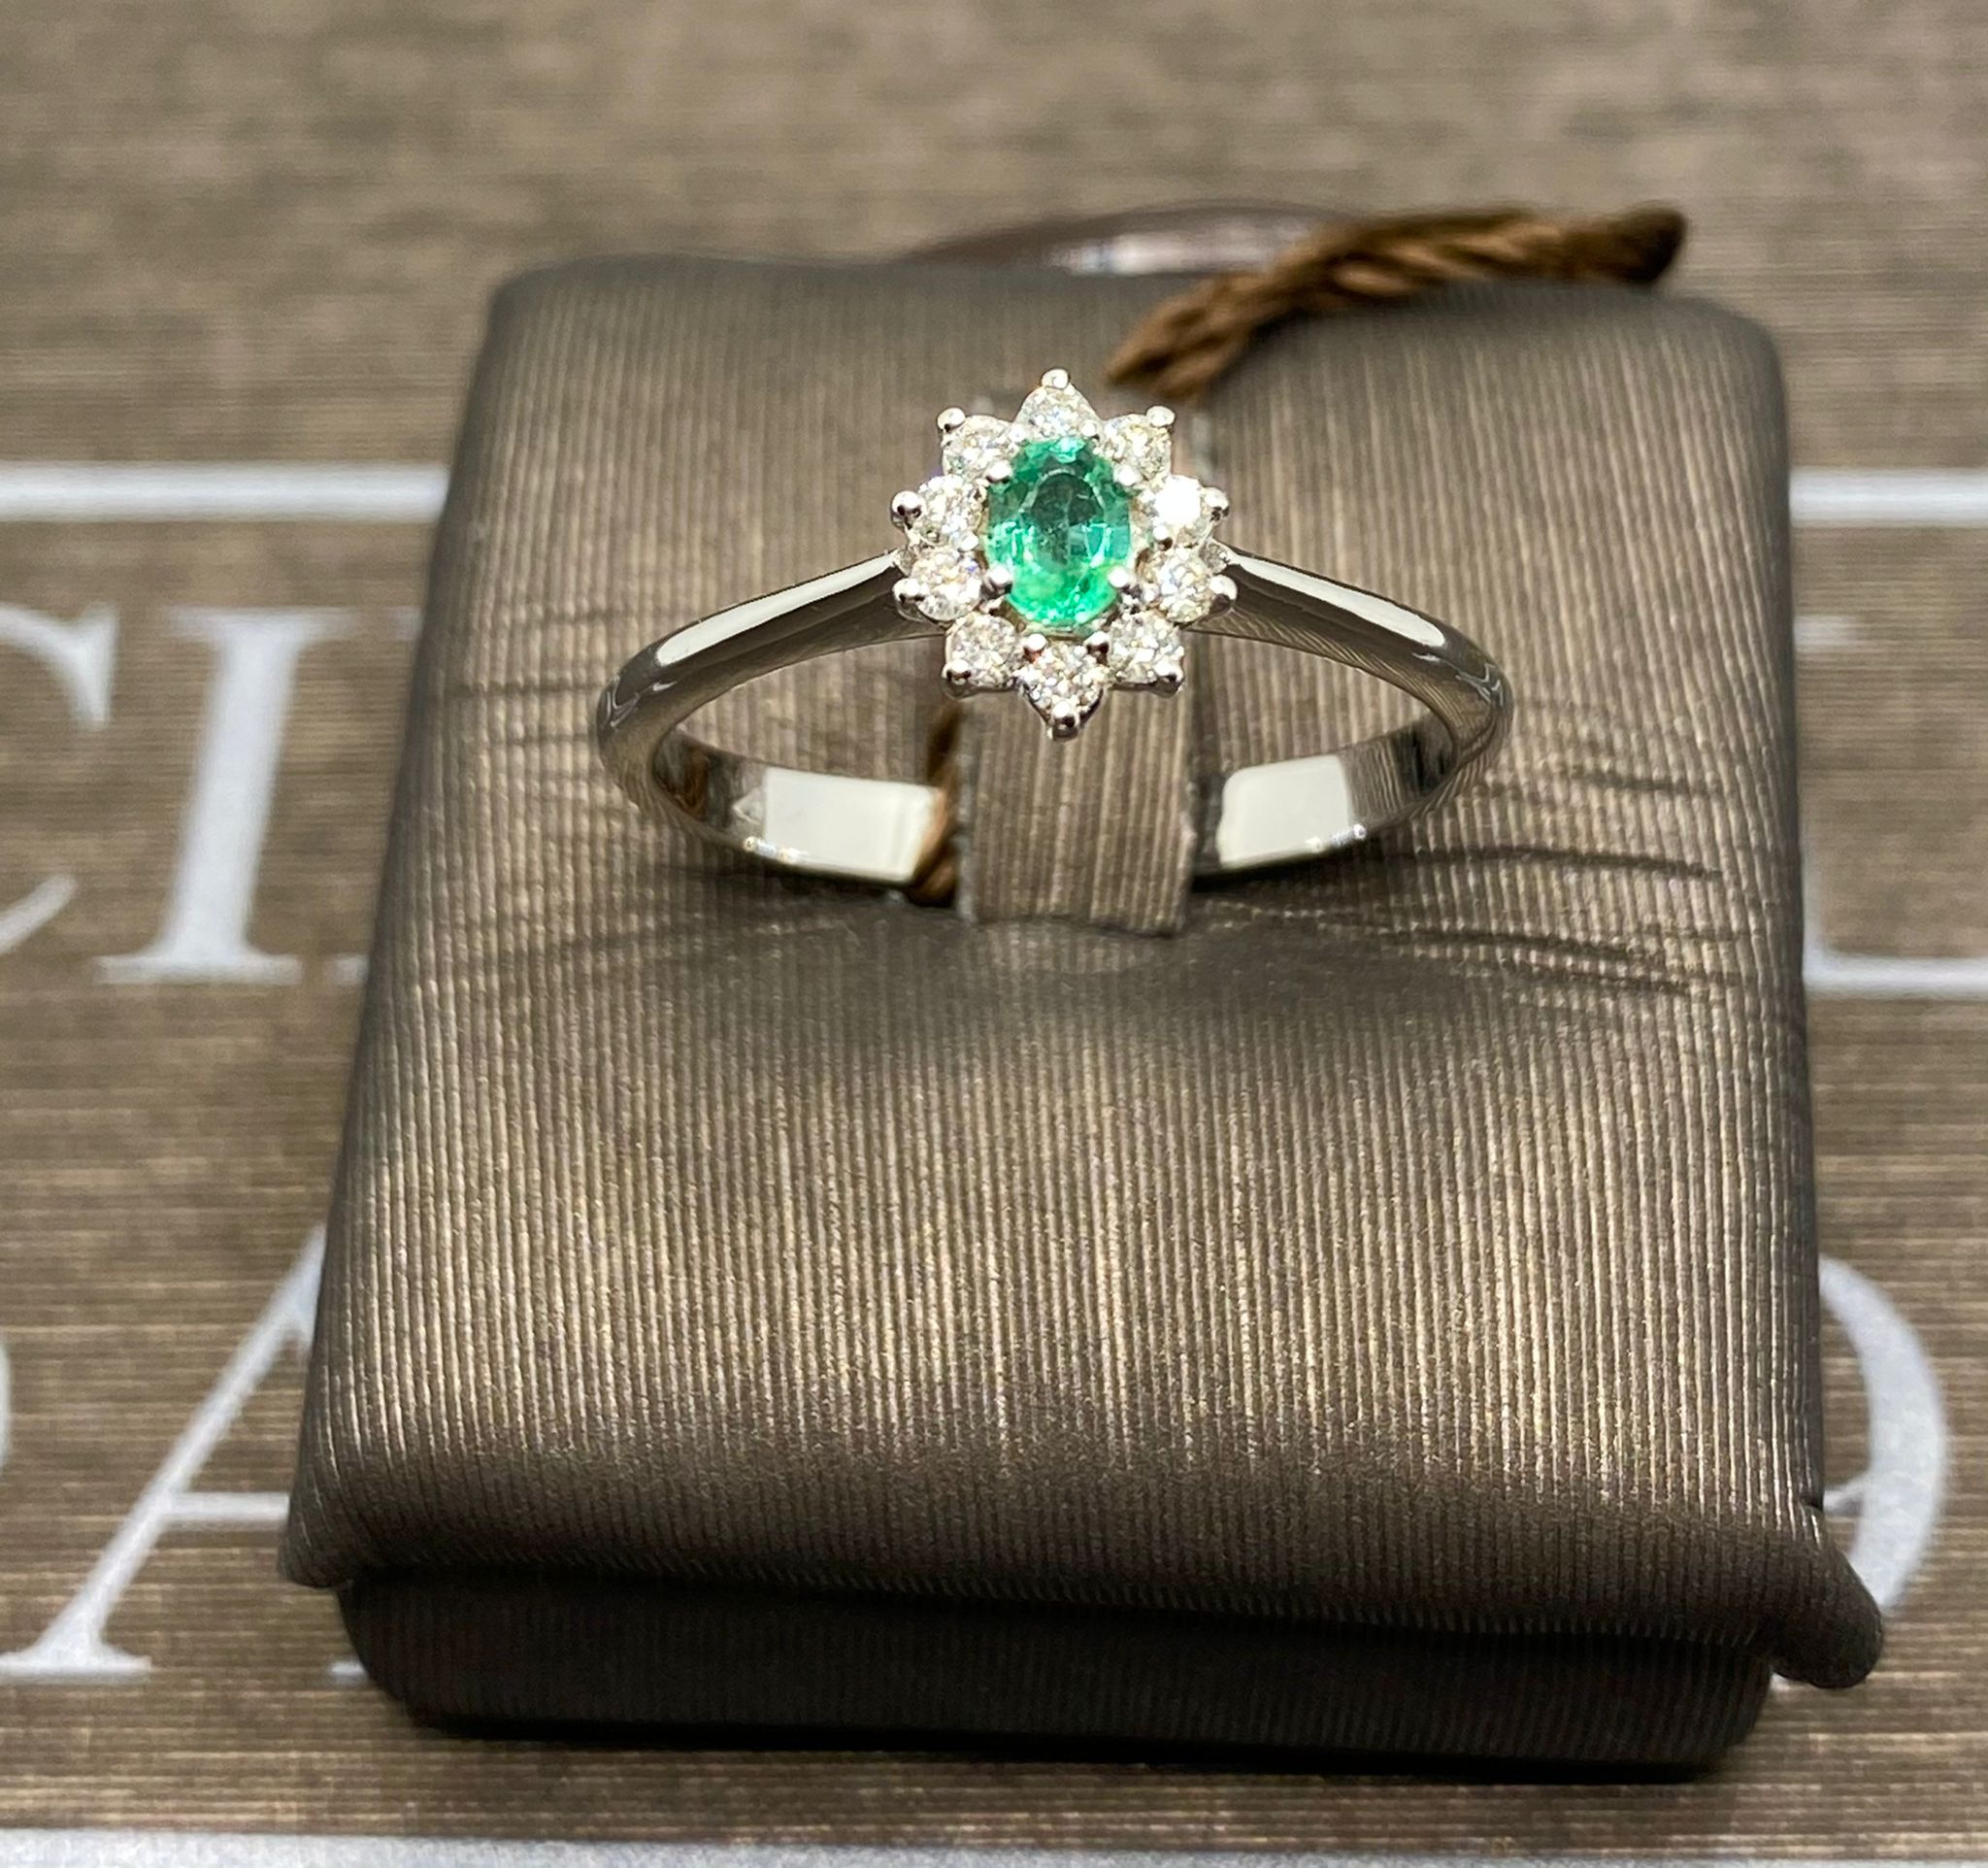 Emerald ring white gold 750% emerald 0.12 ct diamonds 0.11 ct color F/VVs1